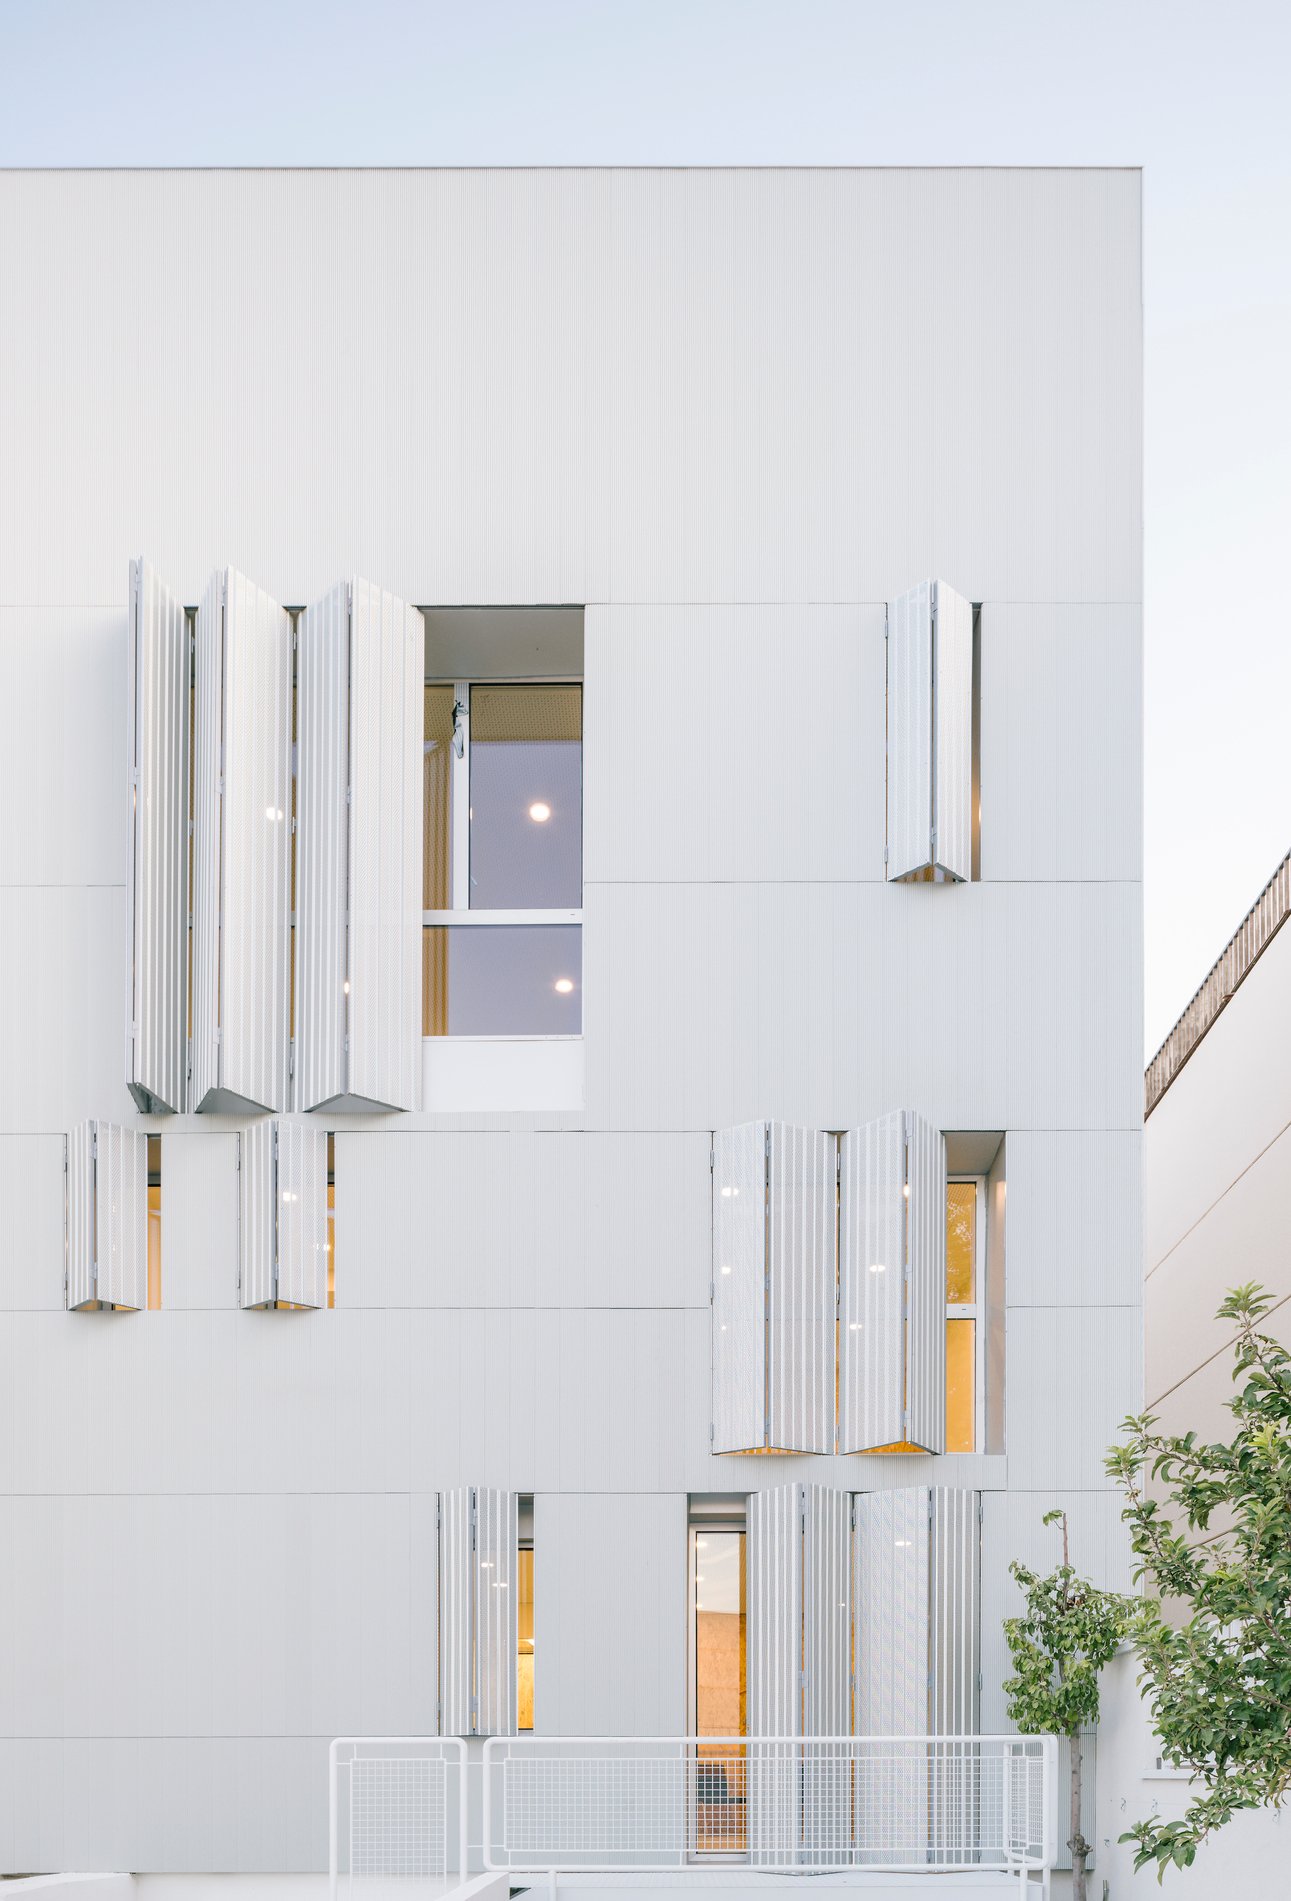 Aluminio para la rehabilitación de fachada ventilada